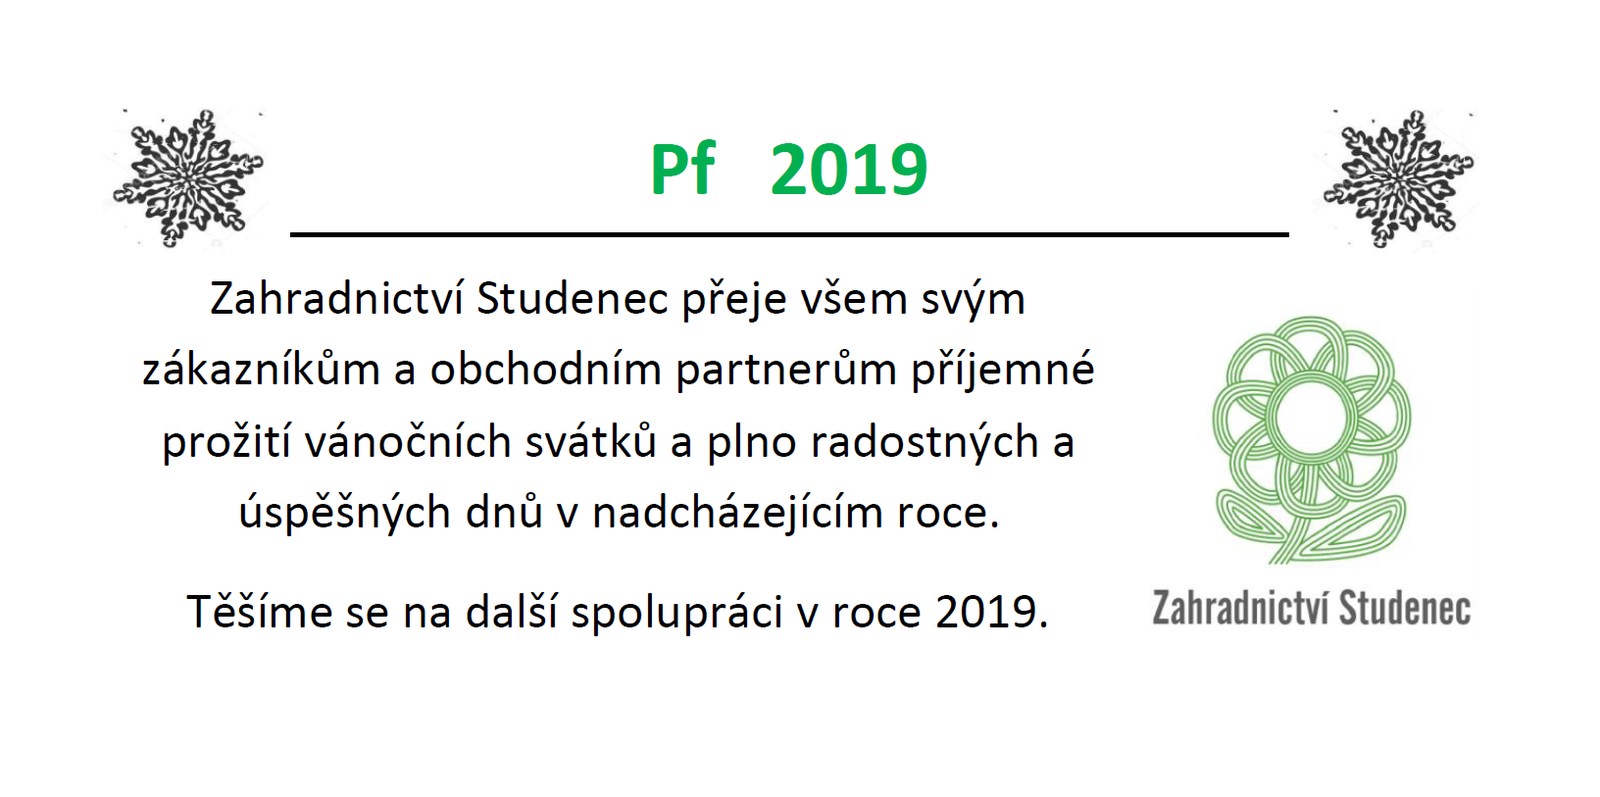 PF 2019 Zahradnictví Studenec u Třebíče